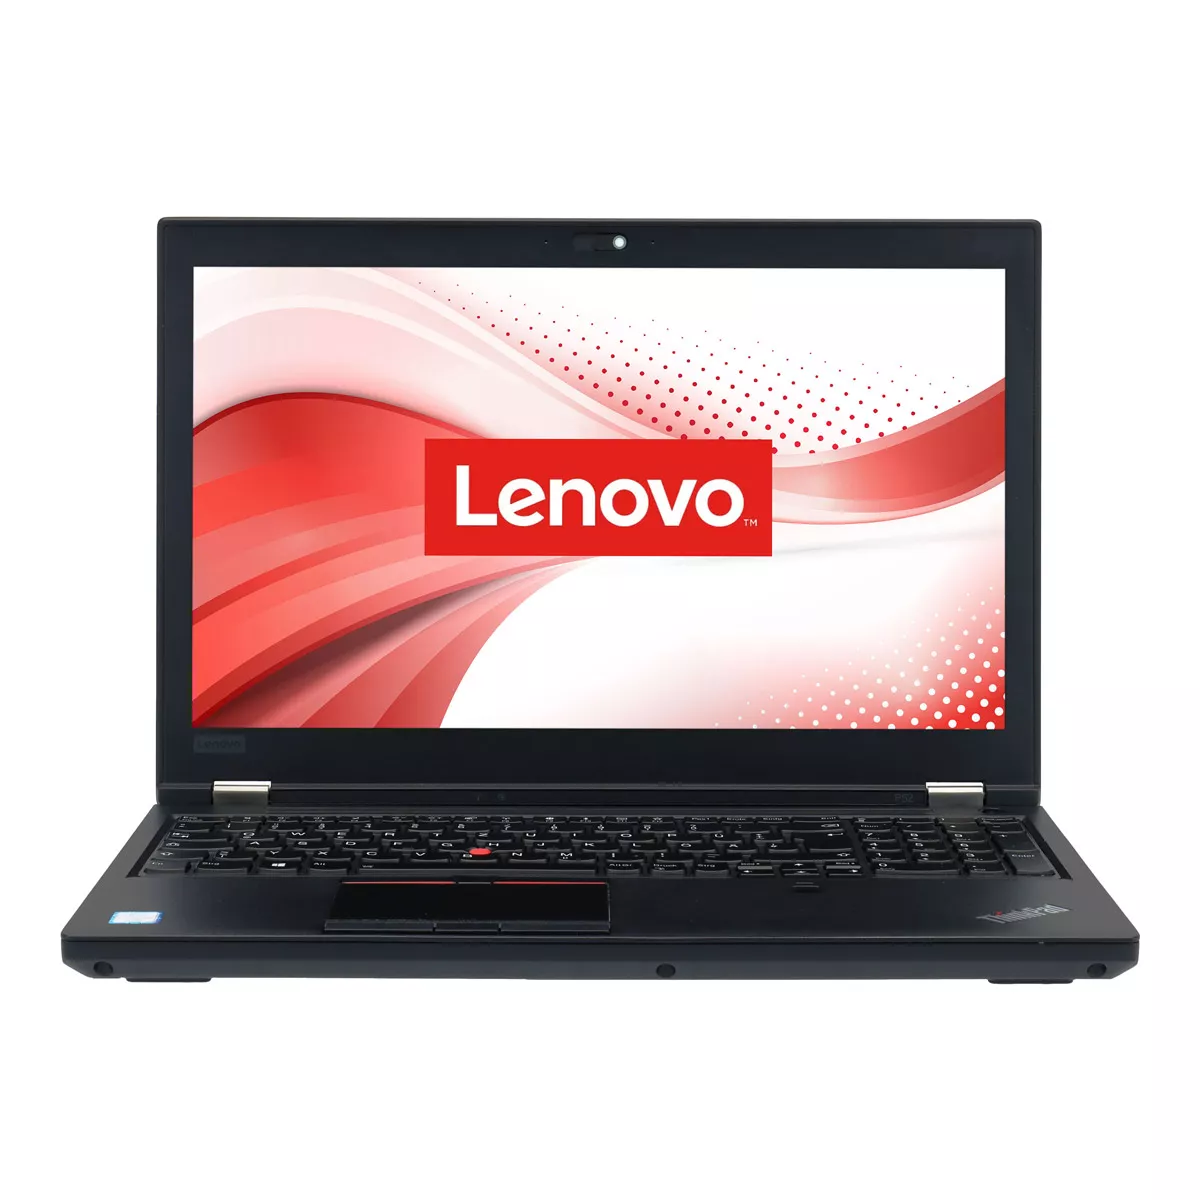 Lenovo ThinkPad P52 Core i7 8750H nVidia Quadro P1000M 32 GB 500 GB M.2 SSD Webcam B